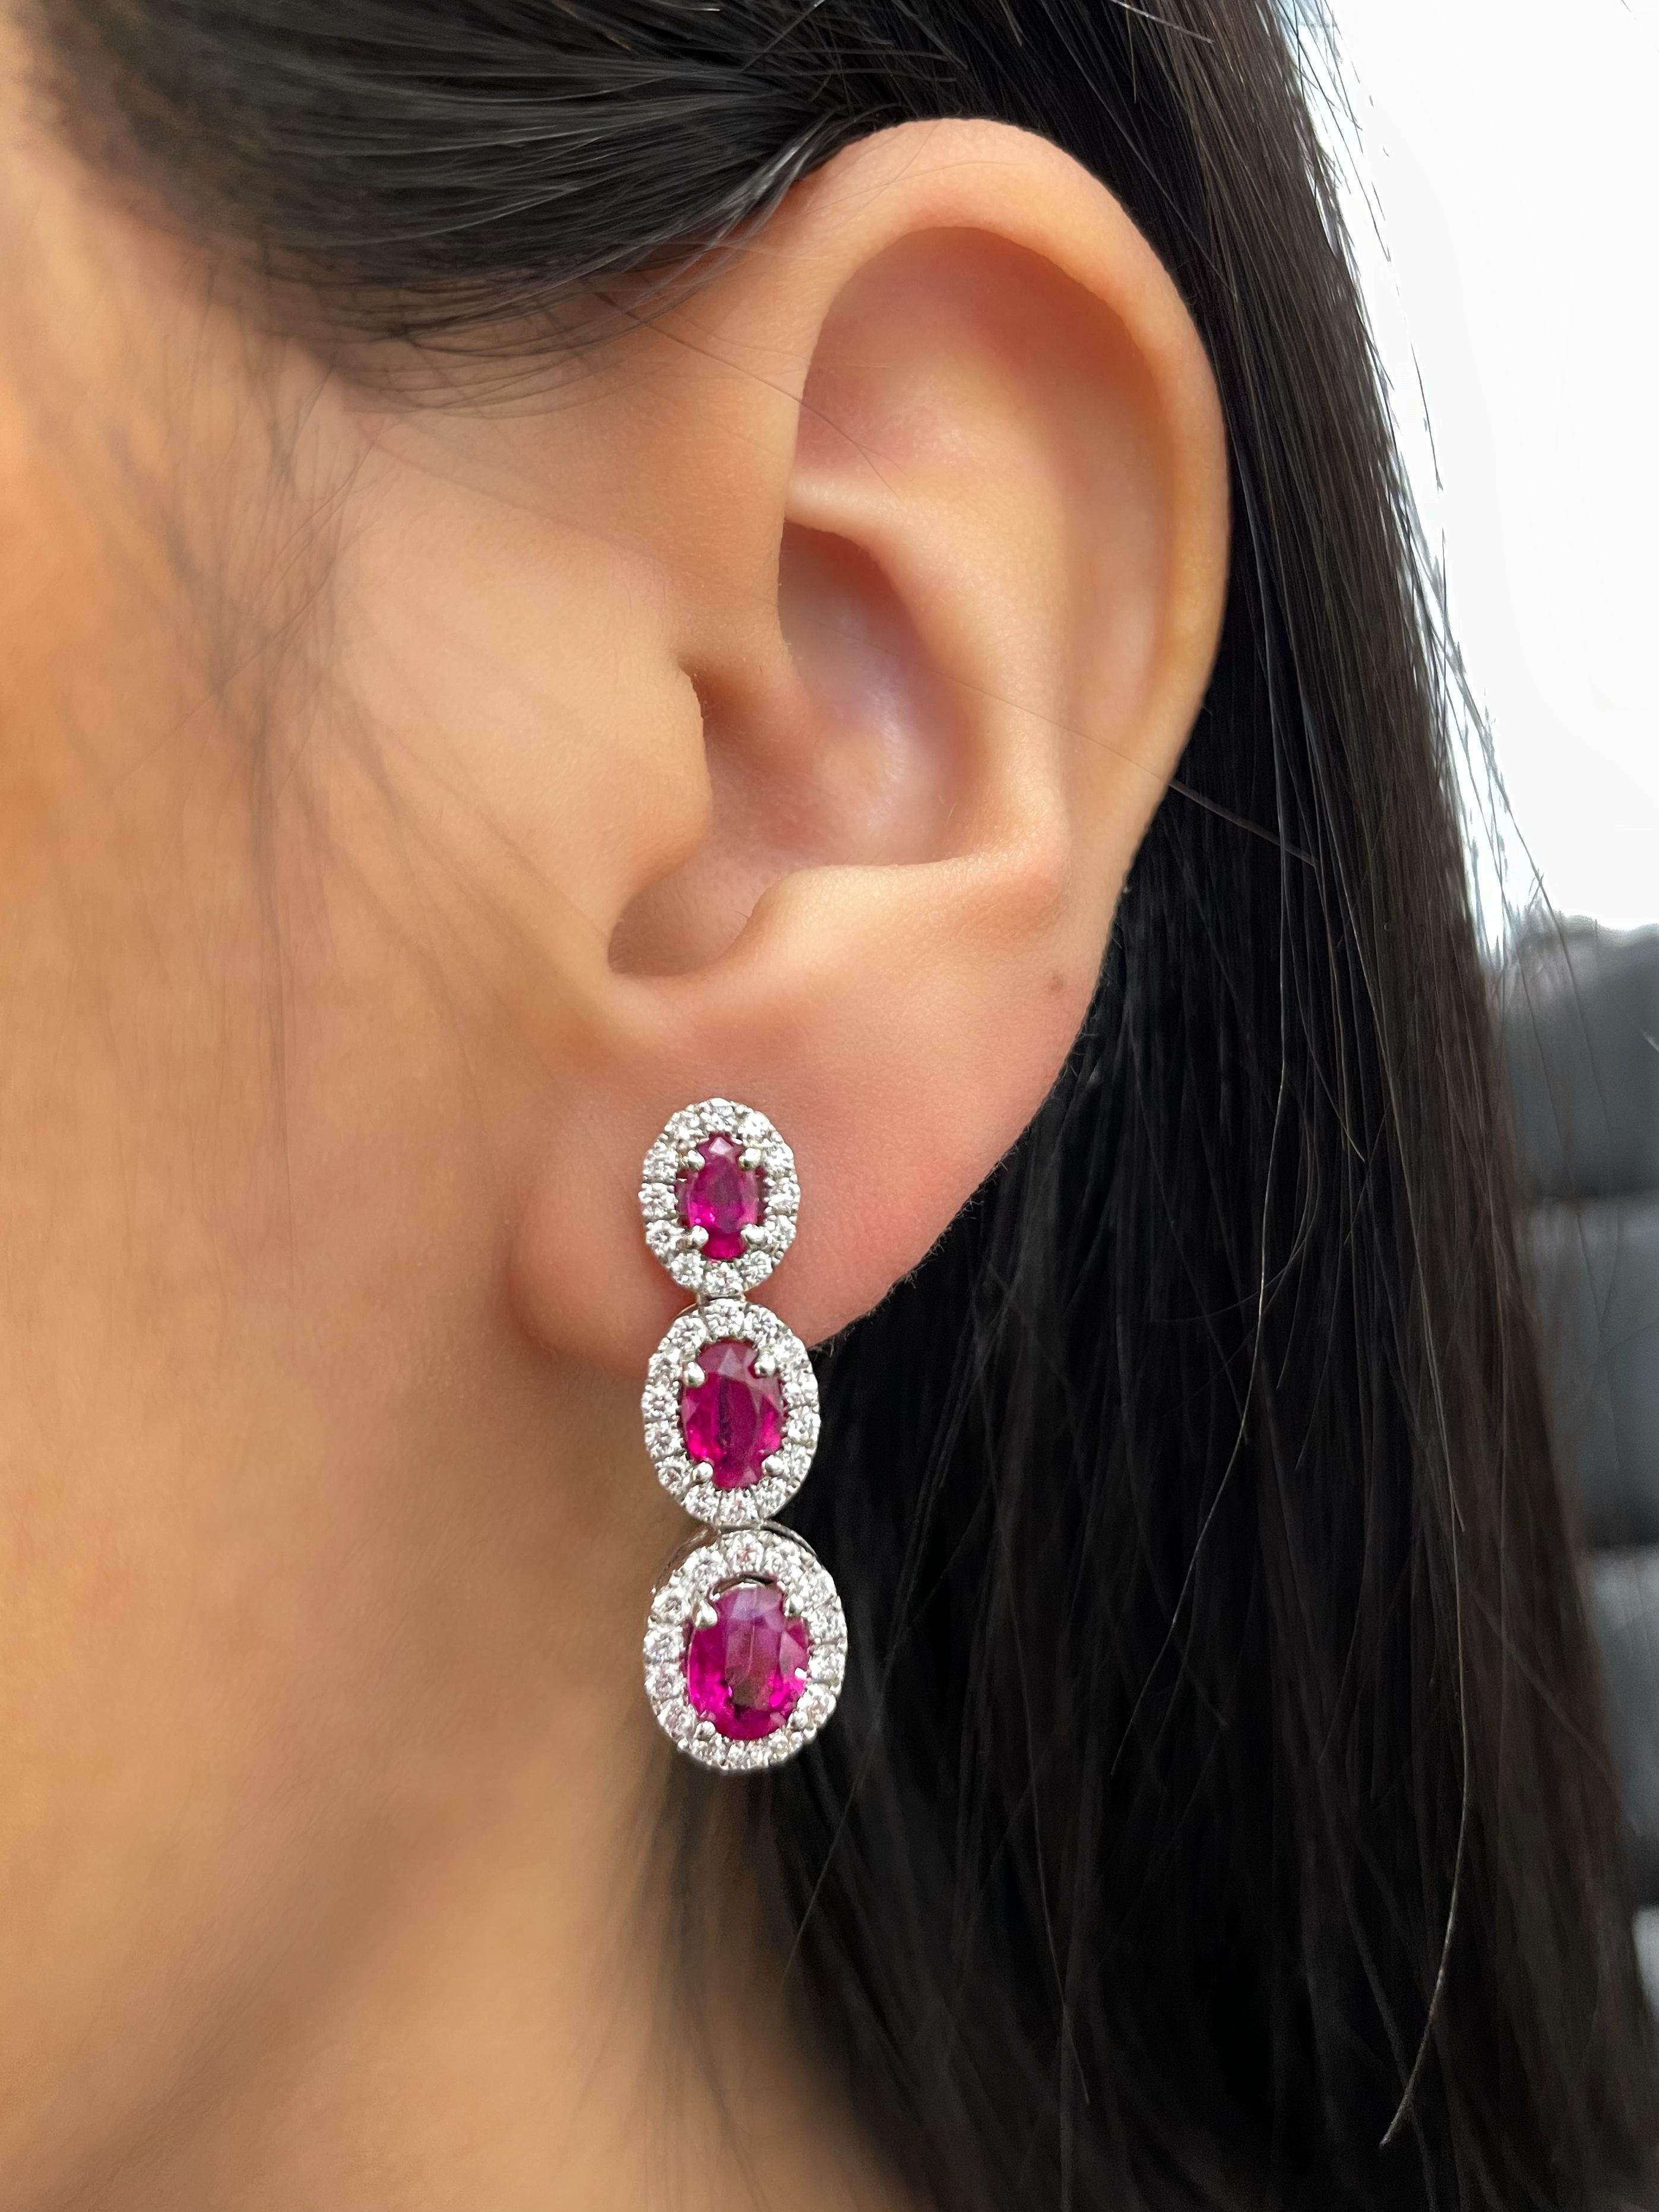 Diese atemberaubenden Ohrringe mit 3,31 Karat aus natürlichen Rubinen und Diamanten sind ein echter Hingucker. Der tiefrote Farbton der Rubine wird durch die funkelnden Diamanten perfekt ergänzt und bildet einen schillernden Kontrast, der jedes